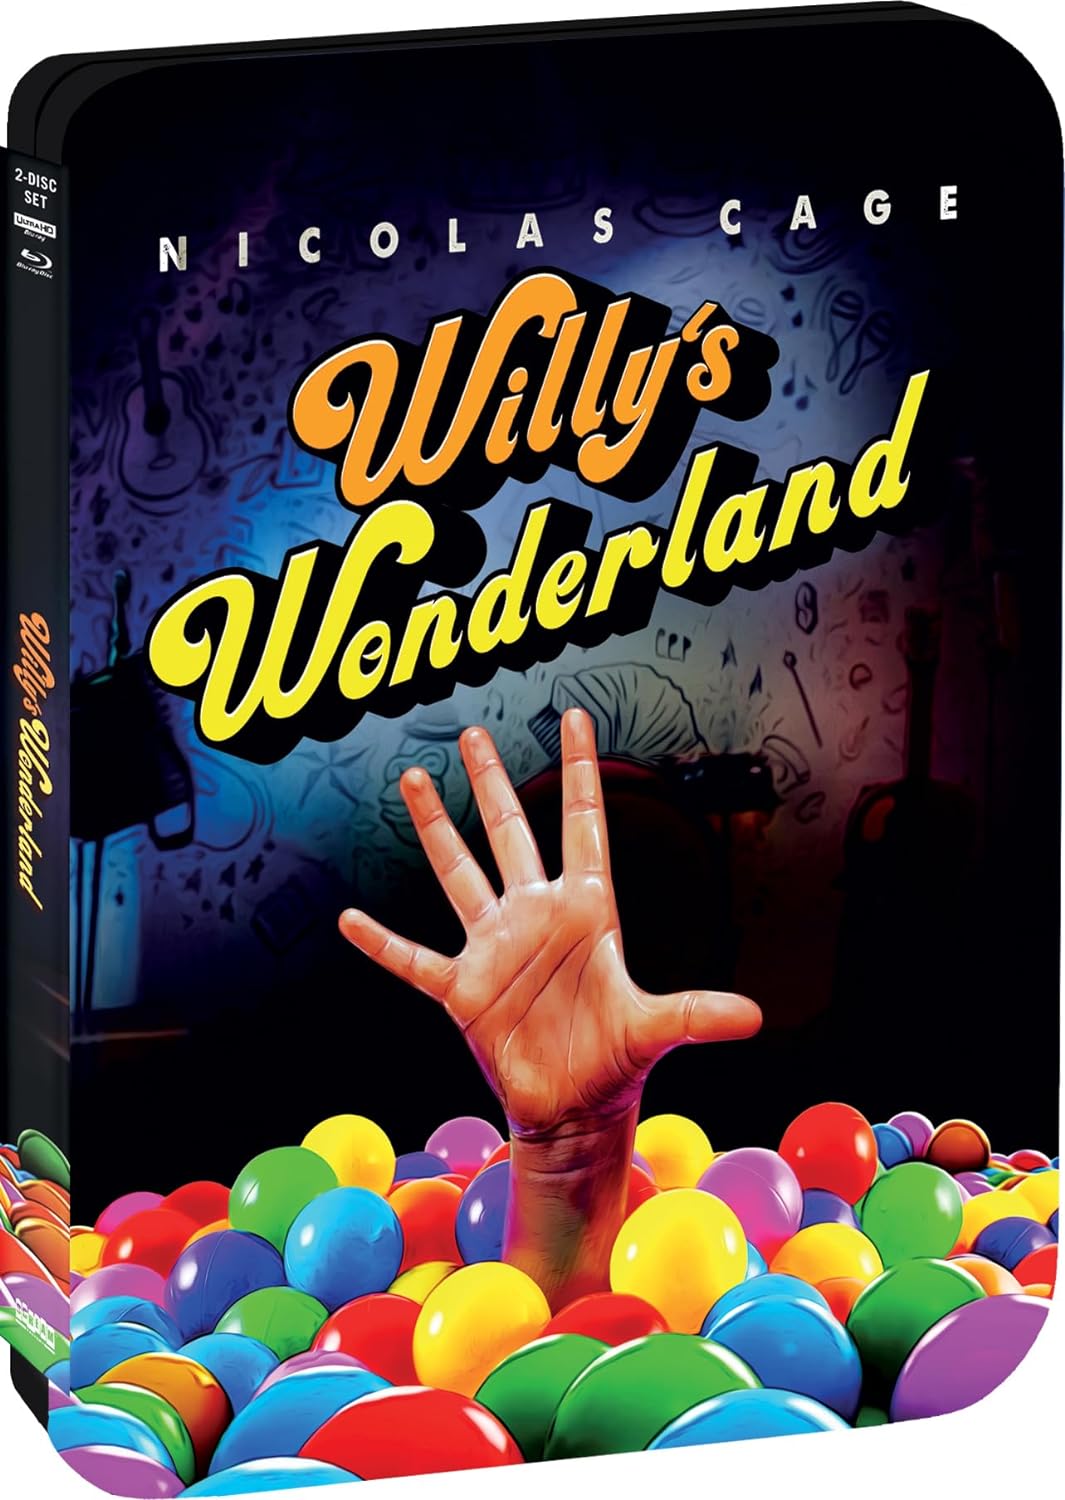 Willy's Wonderland Scream Factory 4K UHD/Blu-Ray Steelbook [PRE-ORDER]